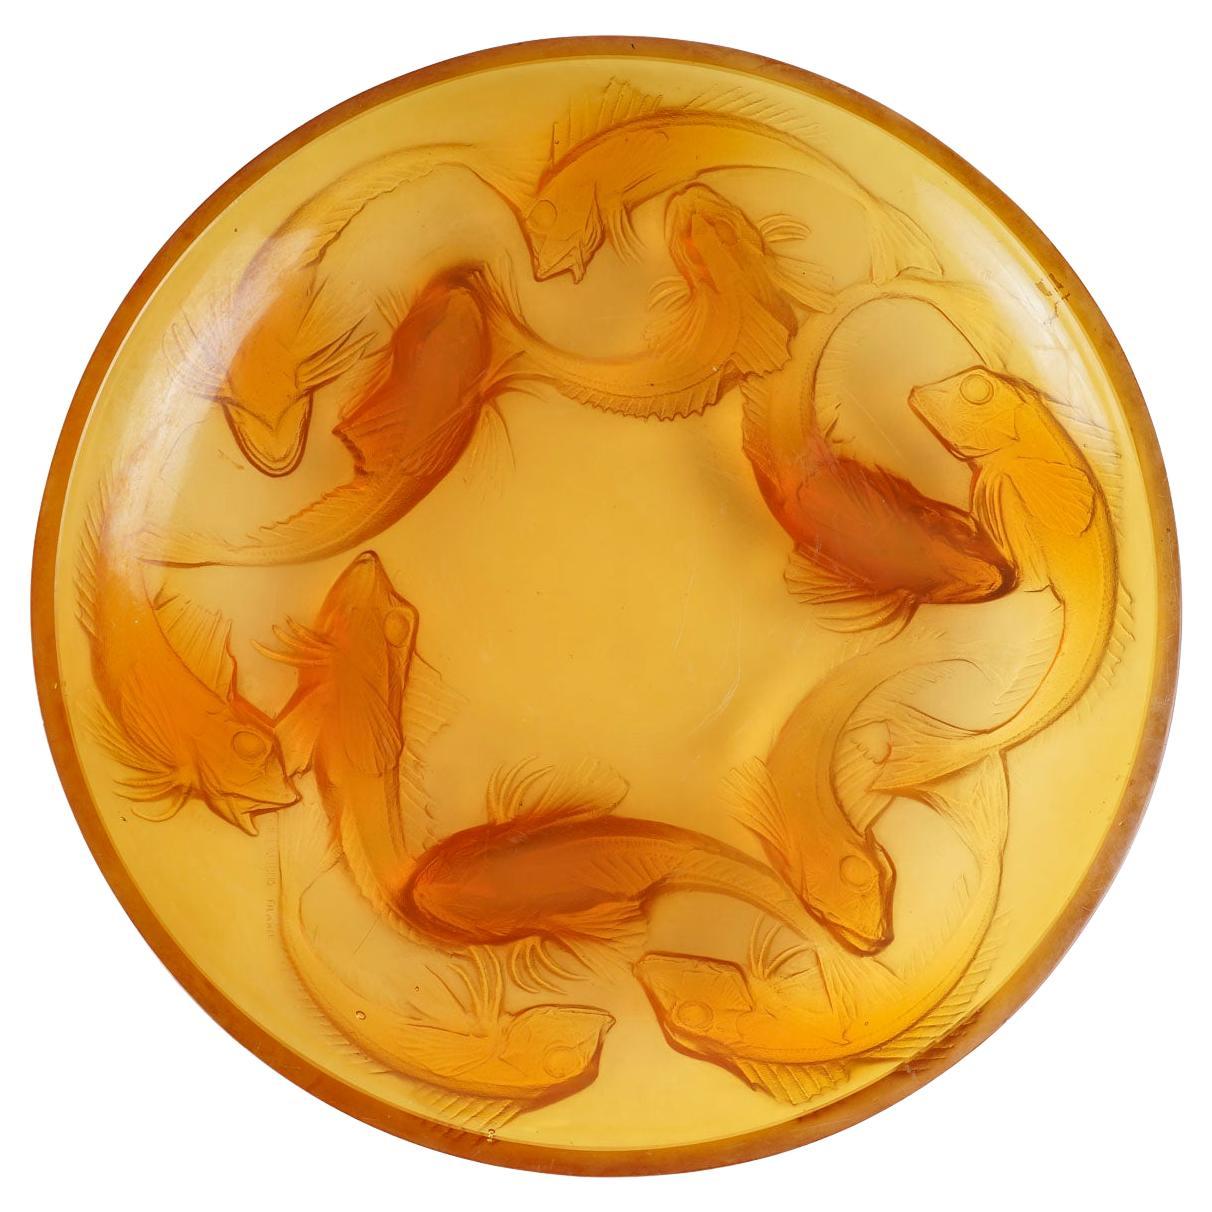 René LALIQUE, "Martigues" Pressed-Molded Butterscotch Glass Dish. For Sale